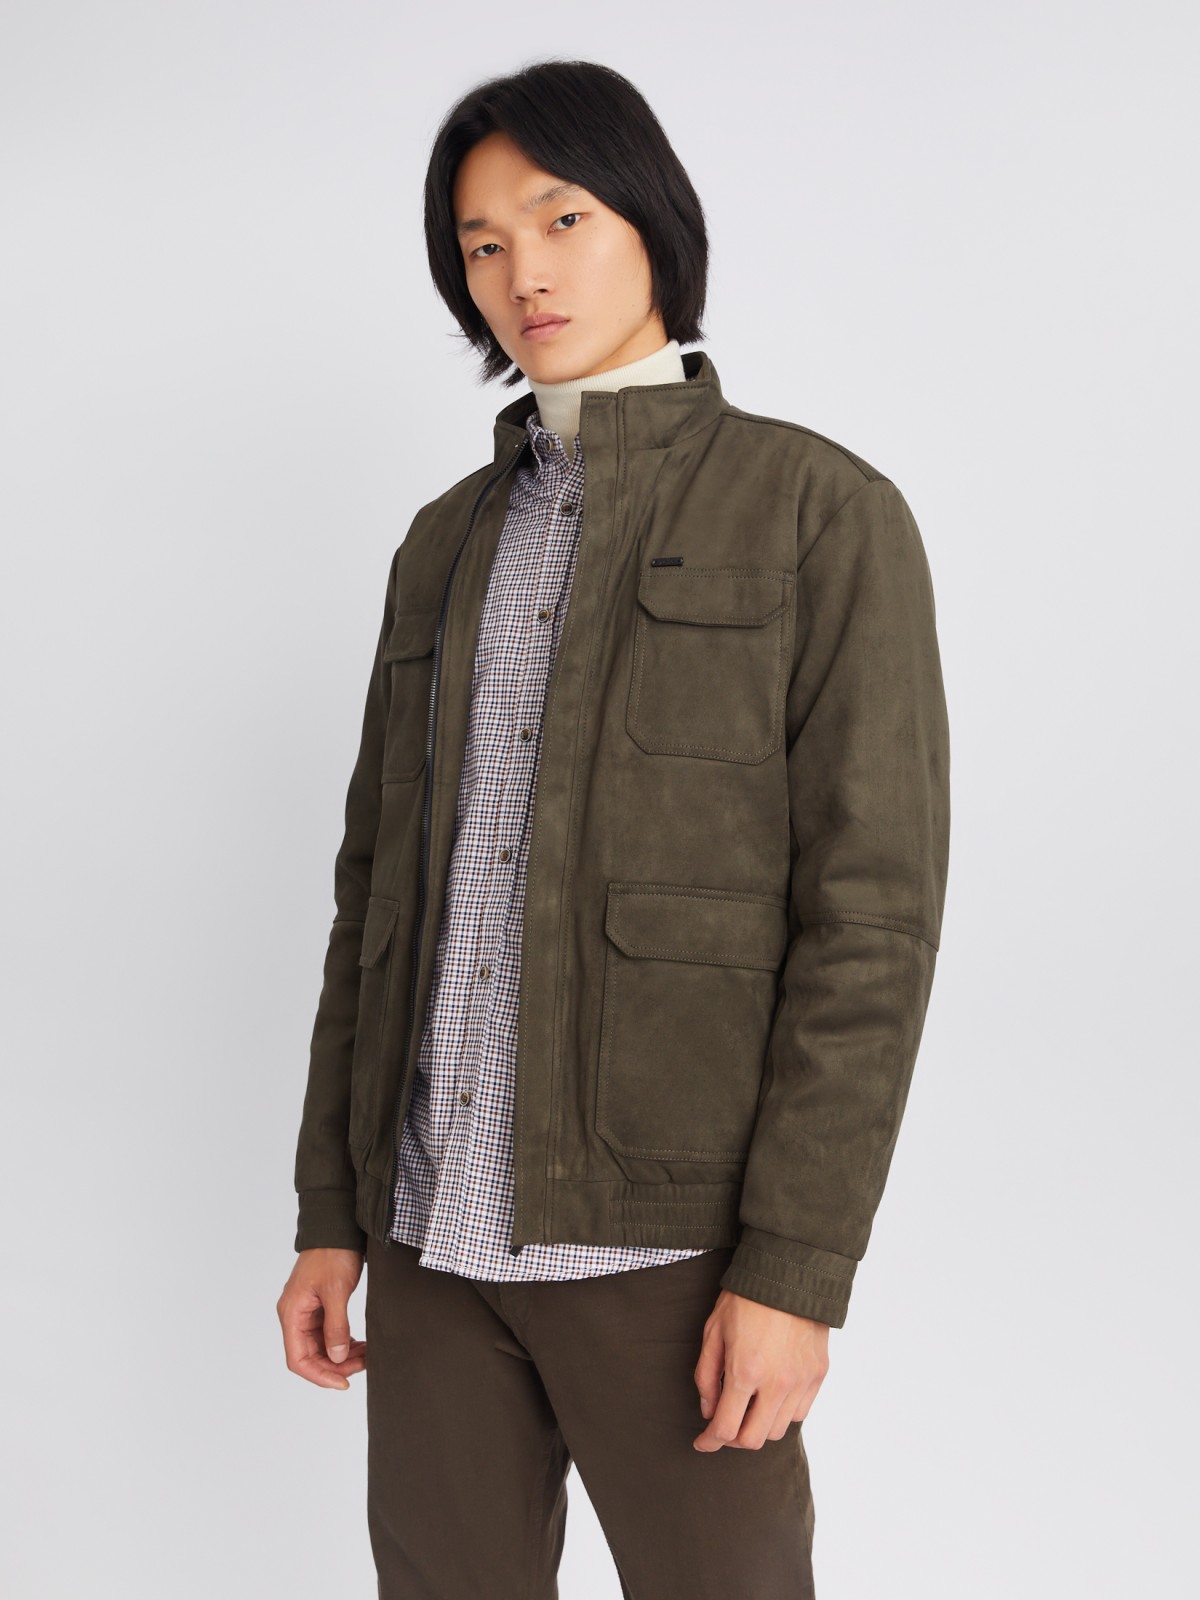 Утеплённая куртка из экозамши на синтепоне с воротником-стойкой zolla цвета хаки